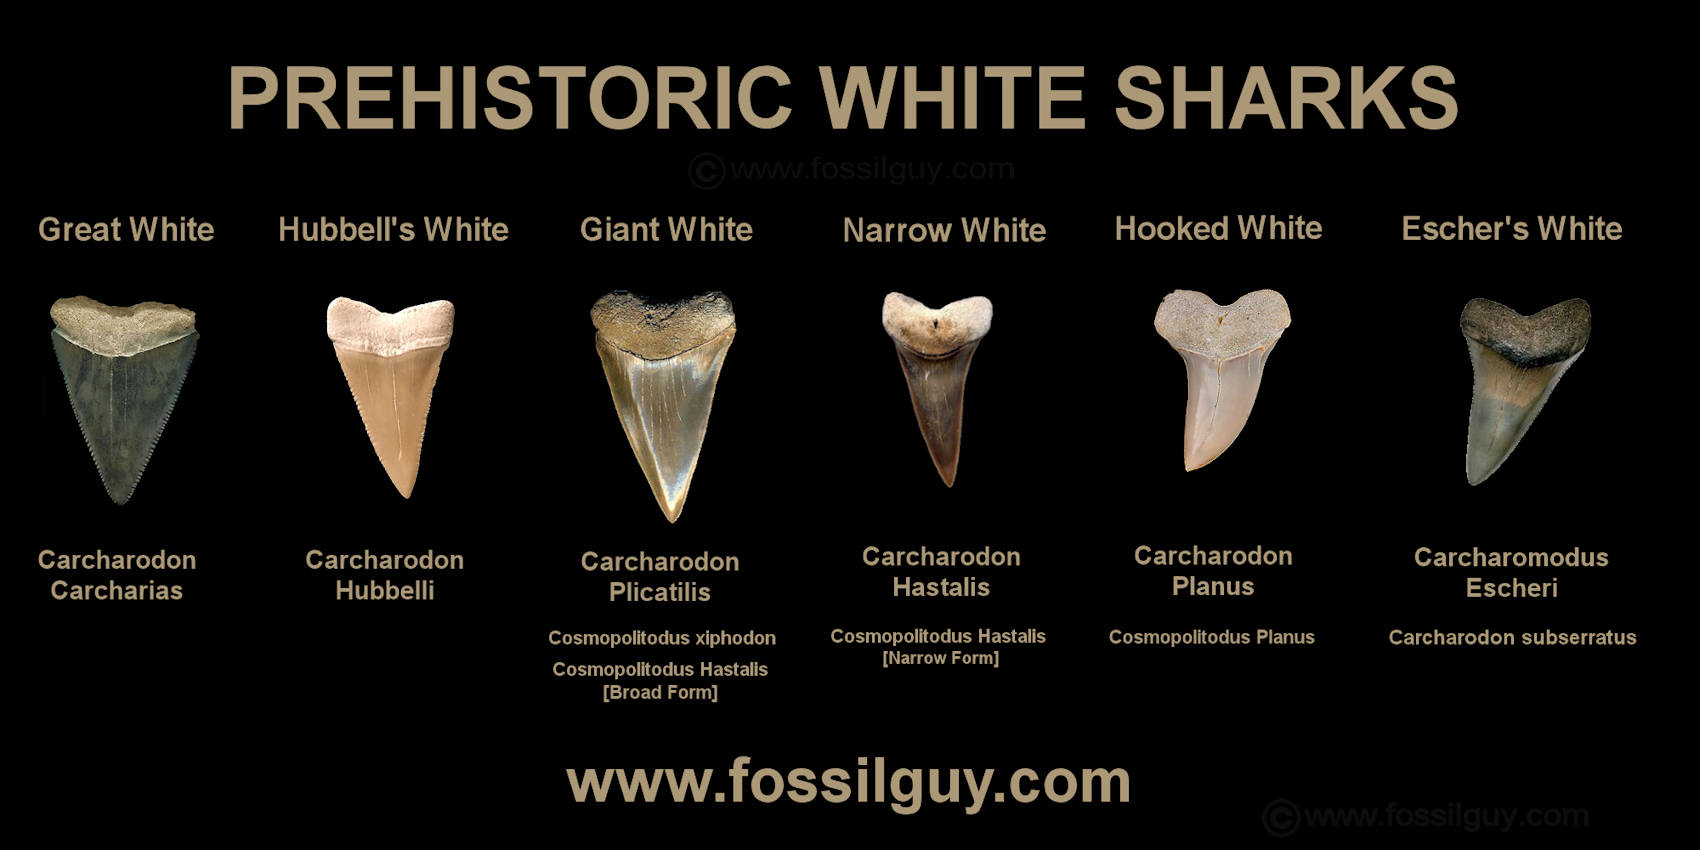 017g One Fossil Odotus Shark Tooth Teeth Megalodon era Older Great White @RANDOM 